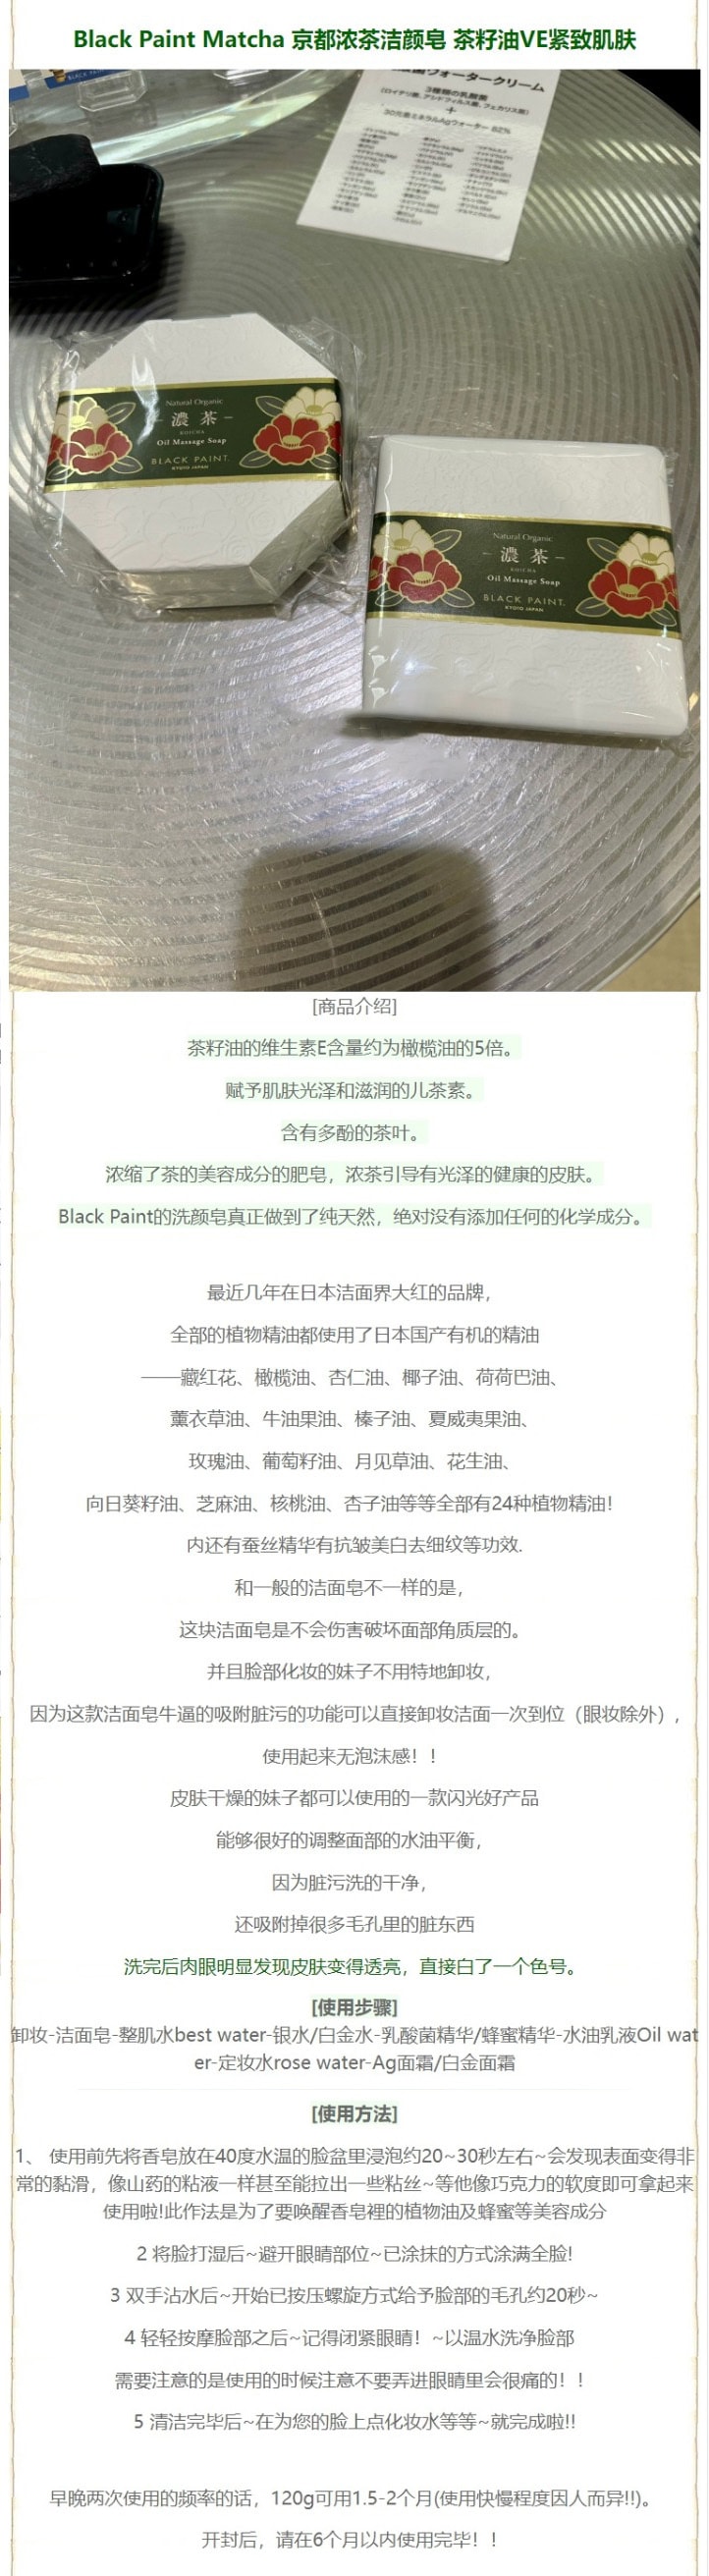 【日本直效郵件】日本小眾品牌BLACK PAINT京都 手工精油潔面皂 乳酸菌1億個濃茶 茶籽油VE緊緻 60g